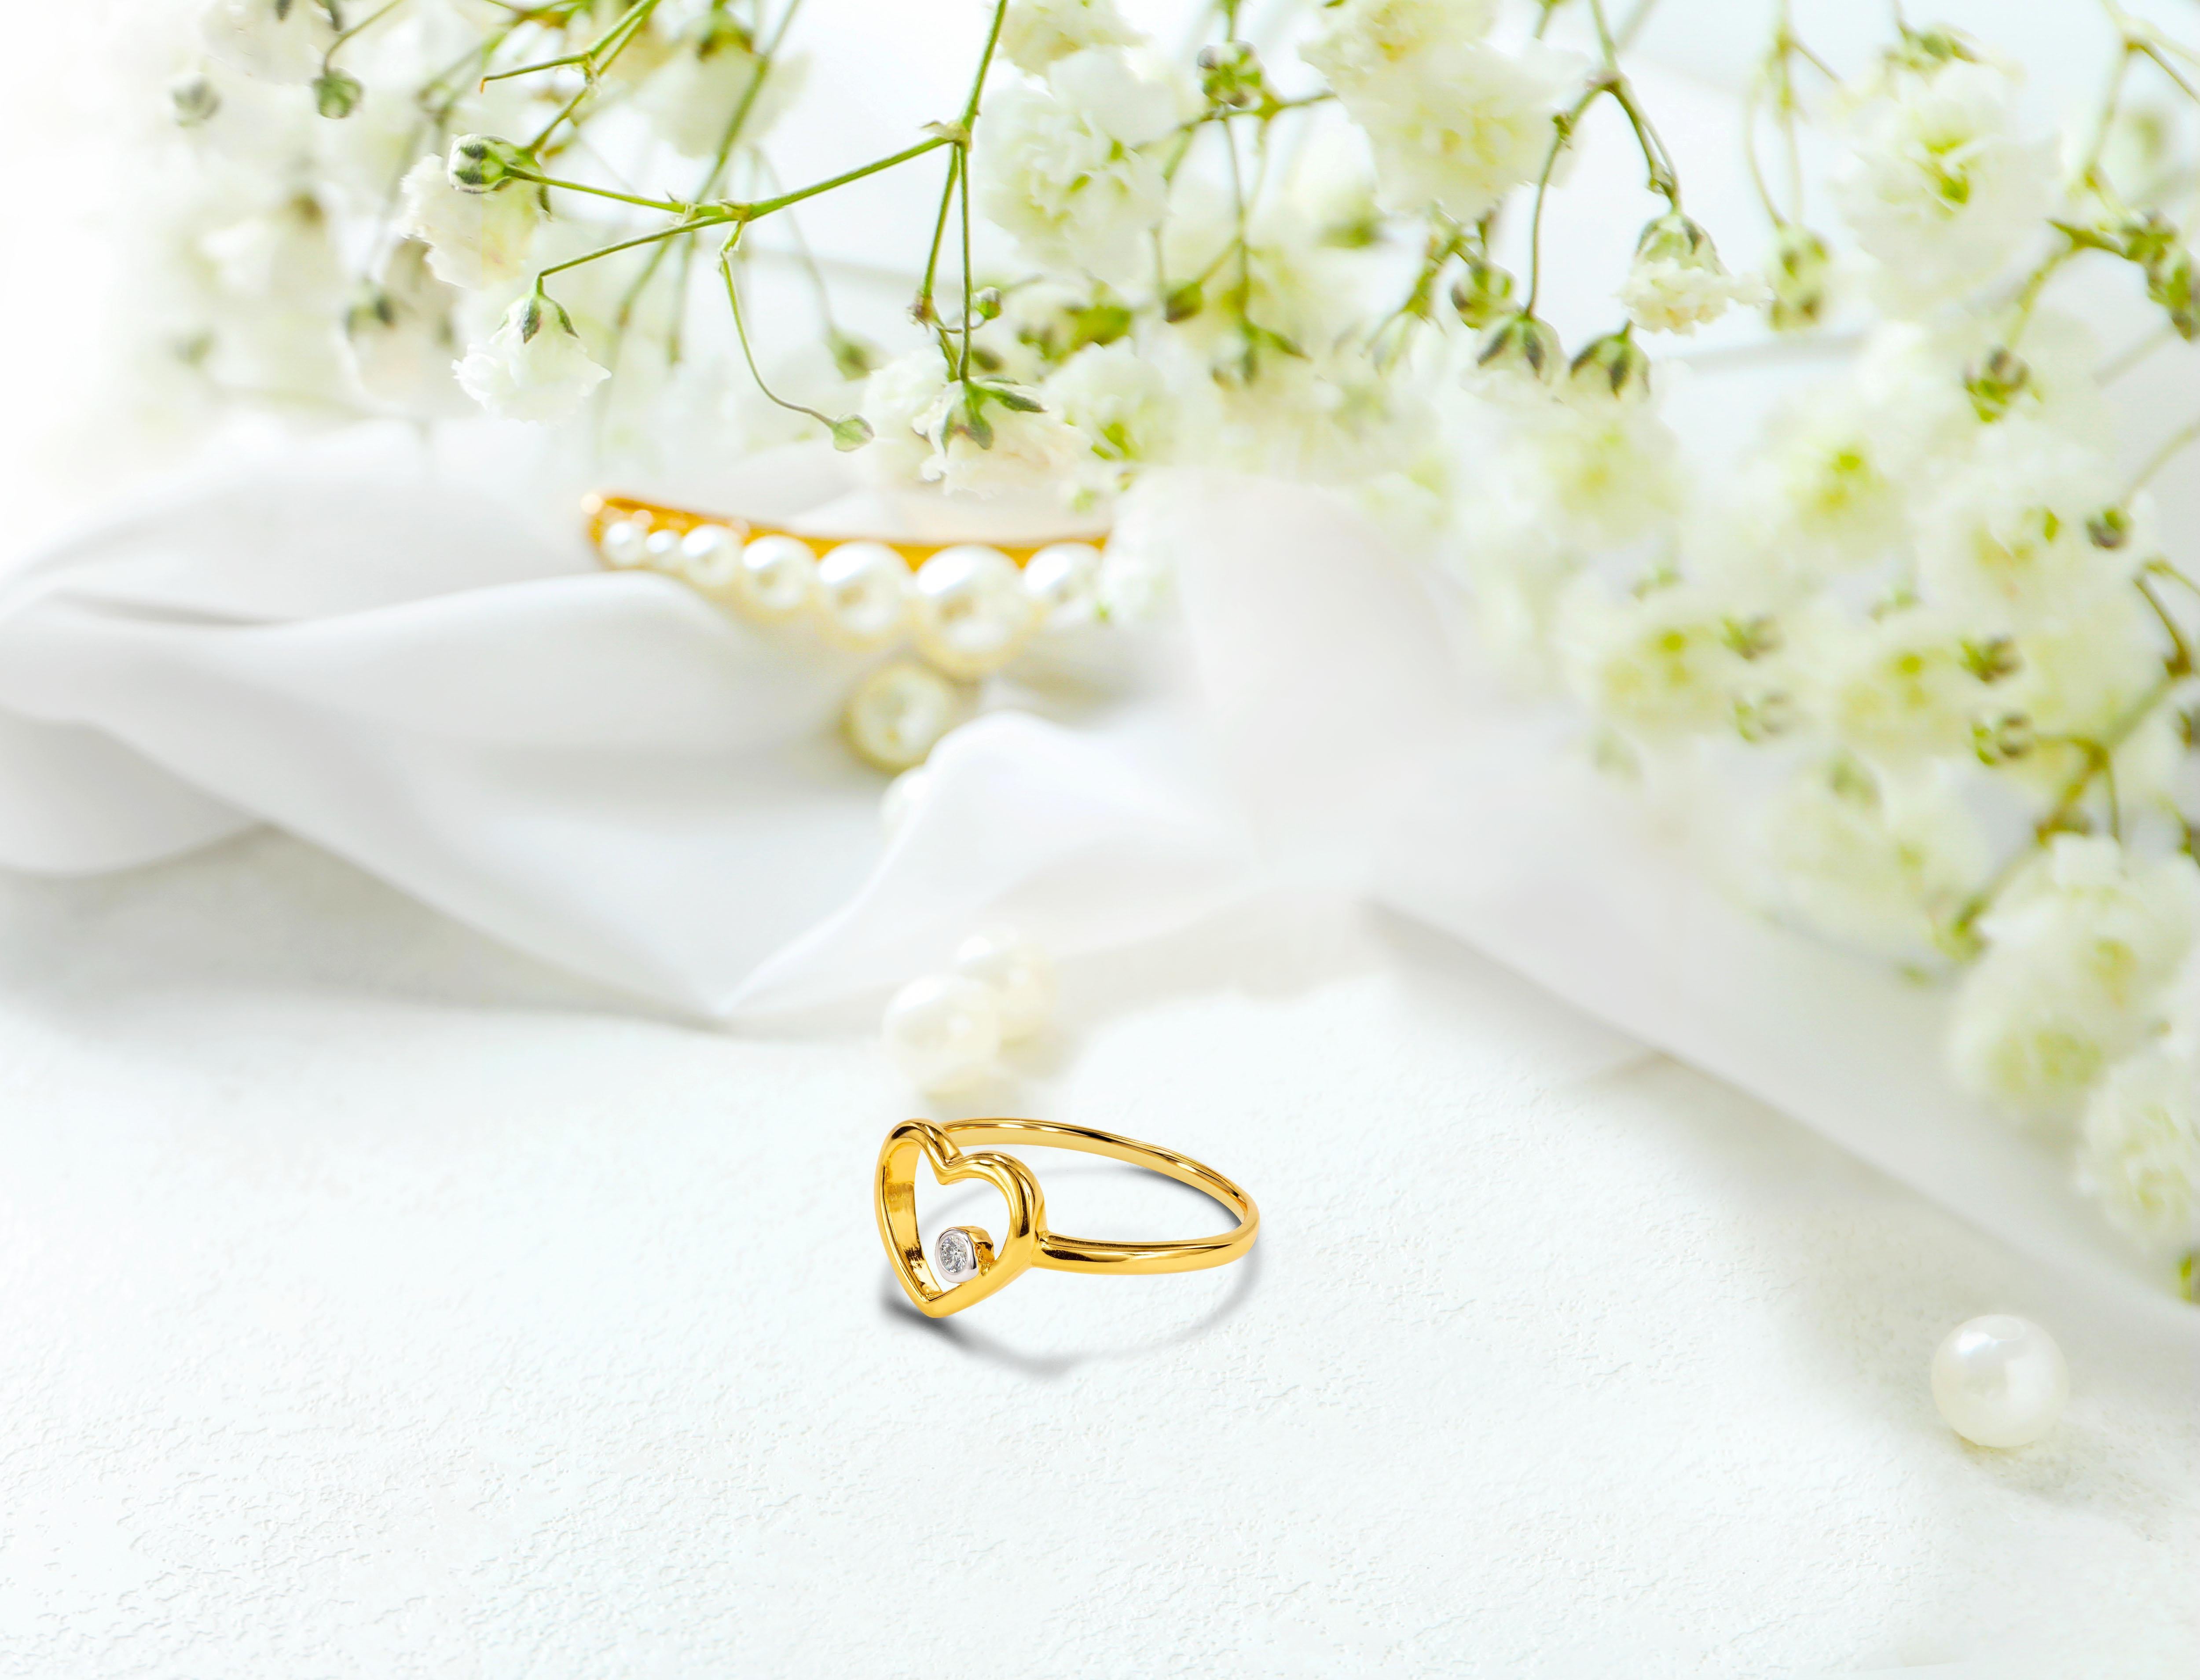 For Sale:  14k Rose Gold Diamond Heart Ring Minimal Heart Ring with Bezel Set Diamond 18